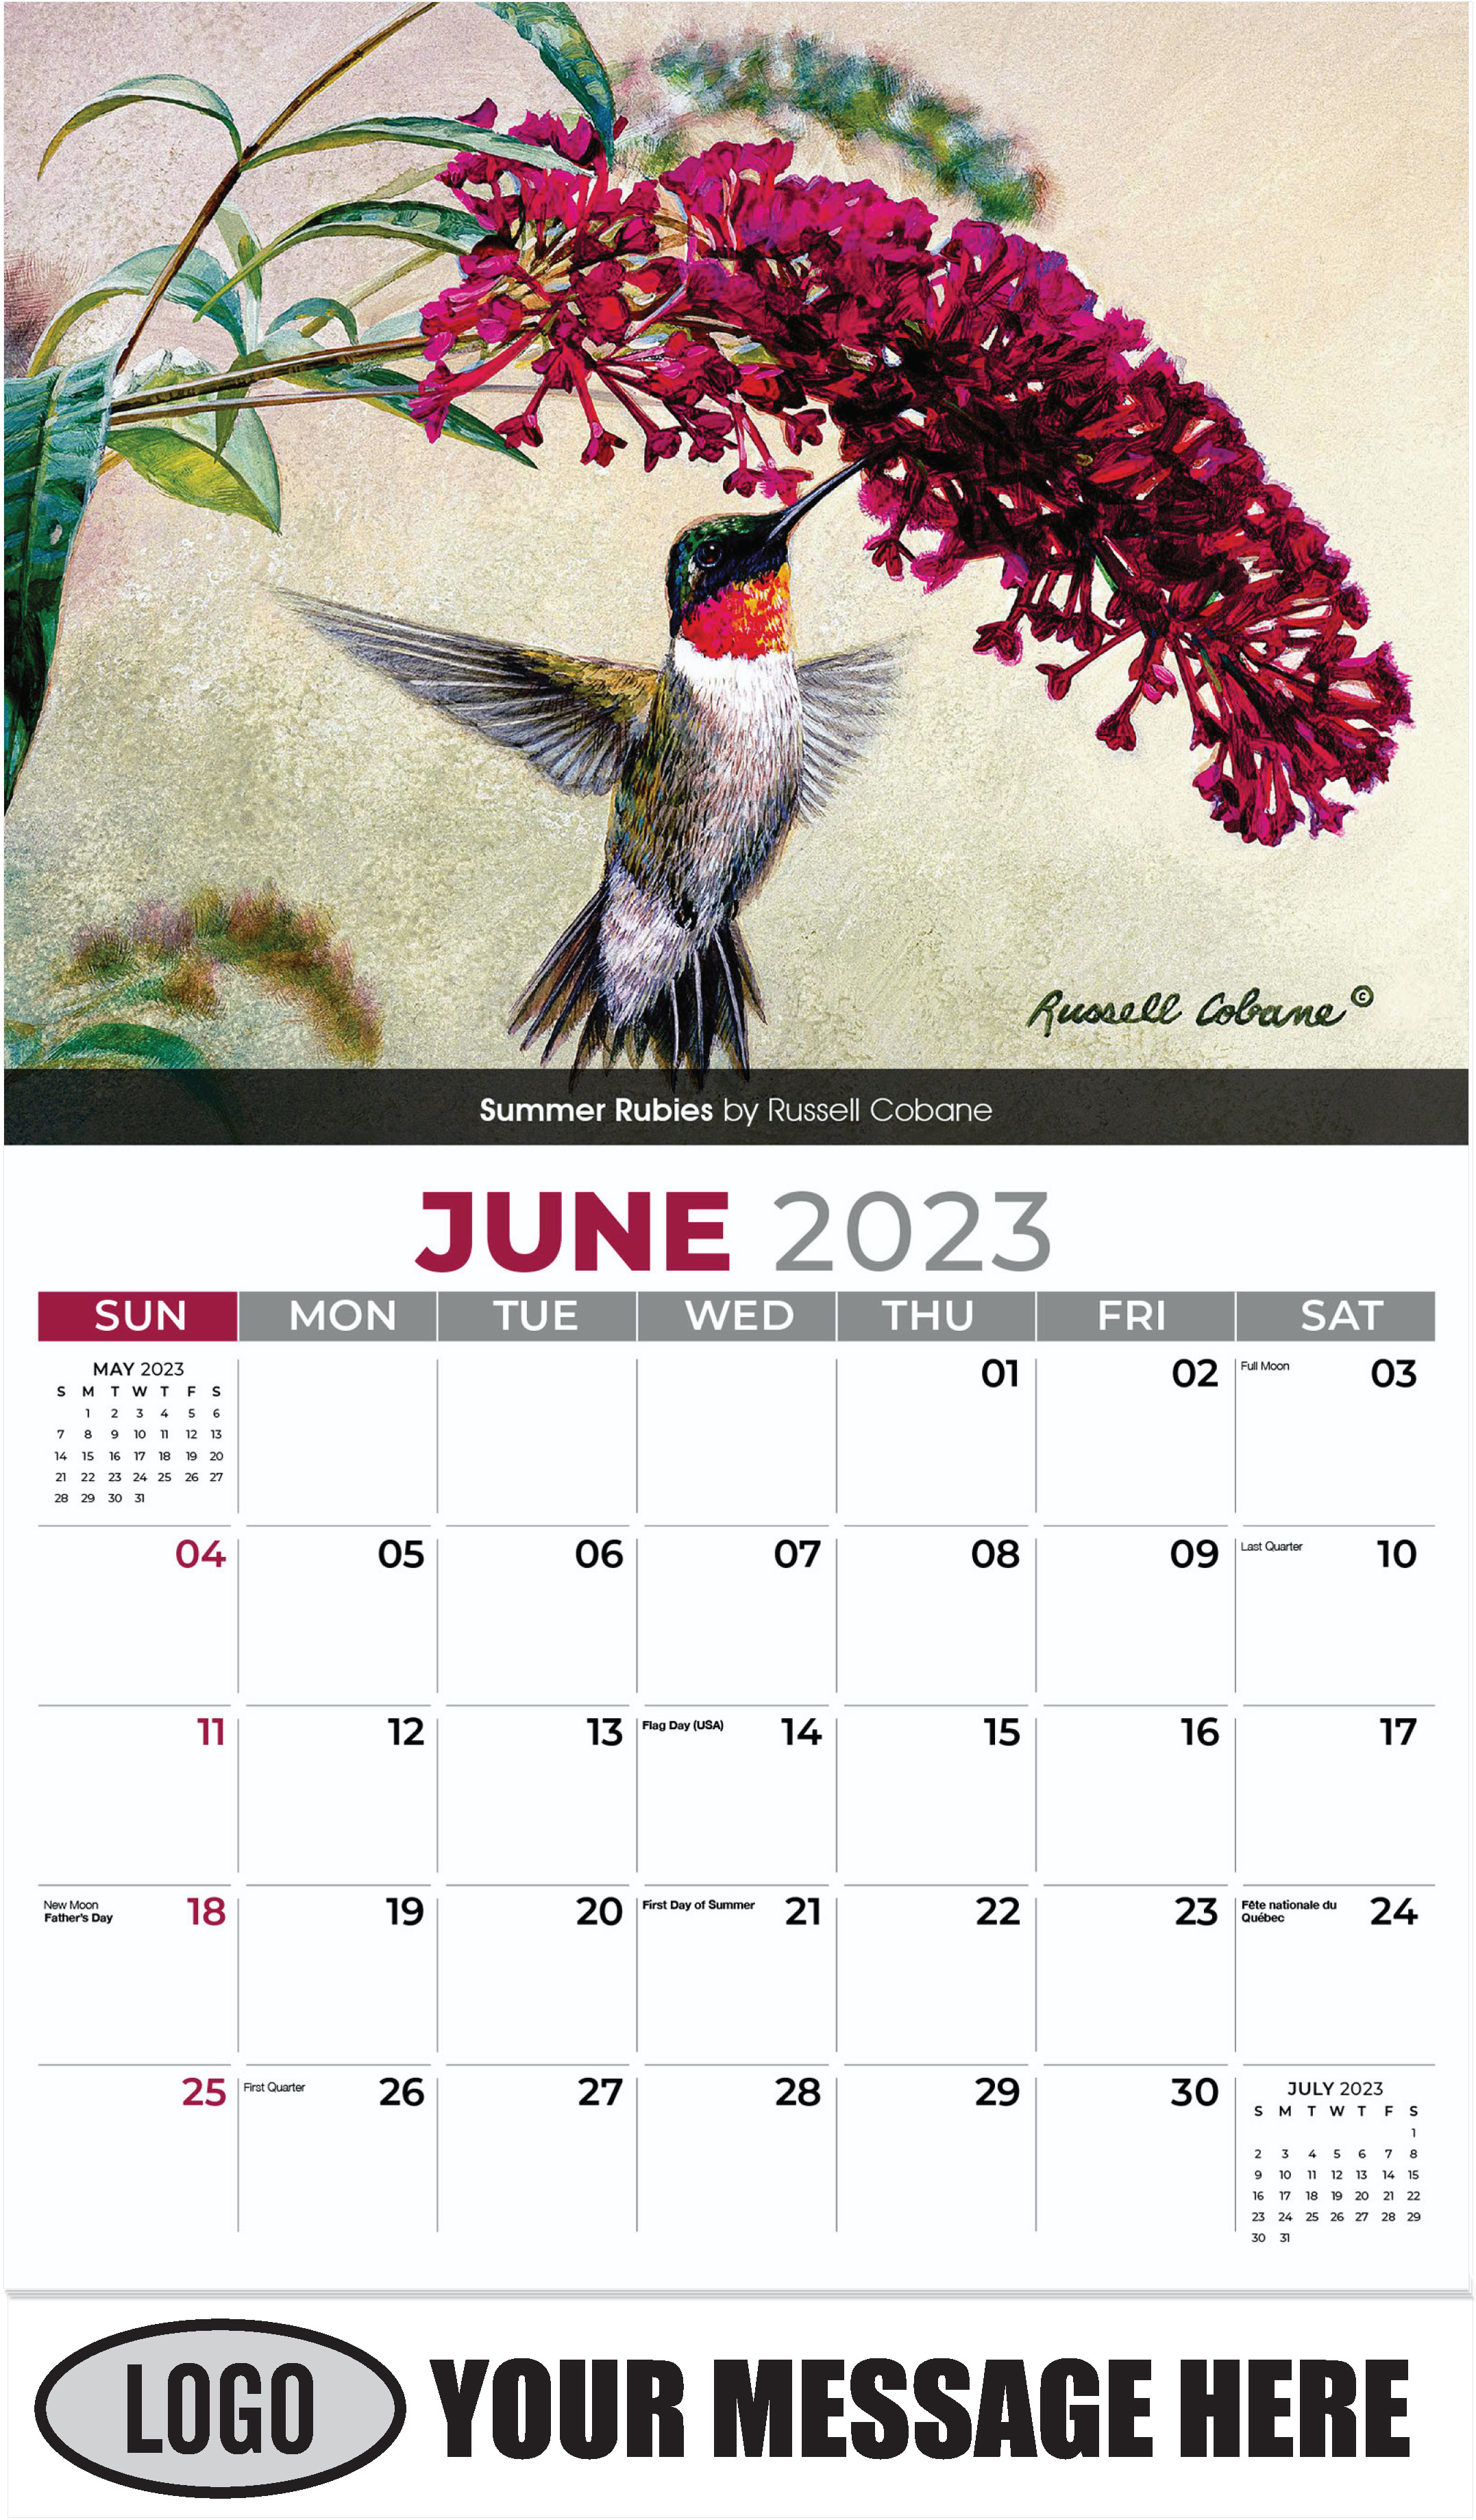 Summer Rubies by Russell Cobane - June - Garden Birds 2023 Promotional Calendar